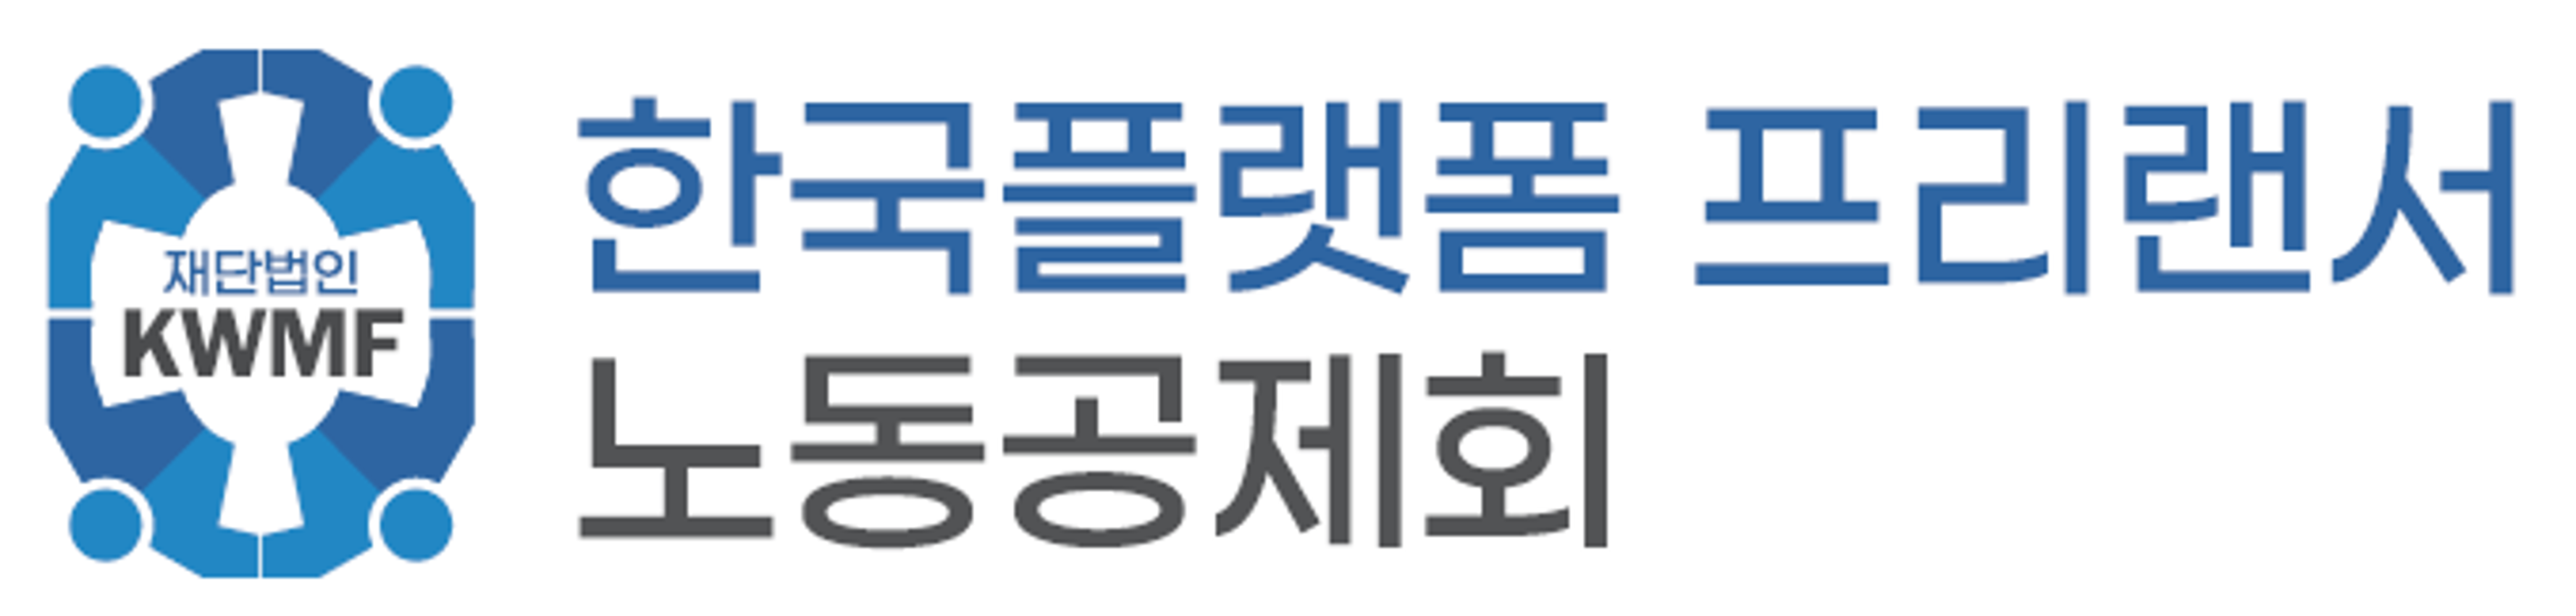 재단법인 한국플랫폼프리랜서노동공제회 로고